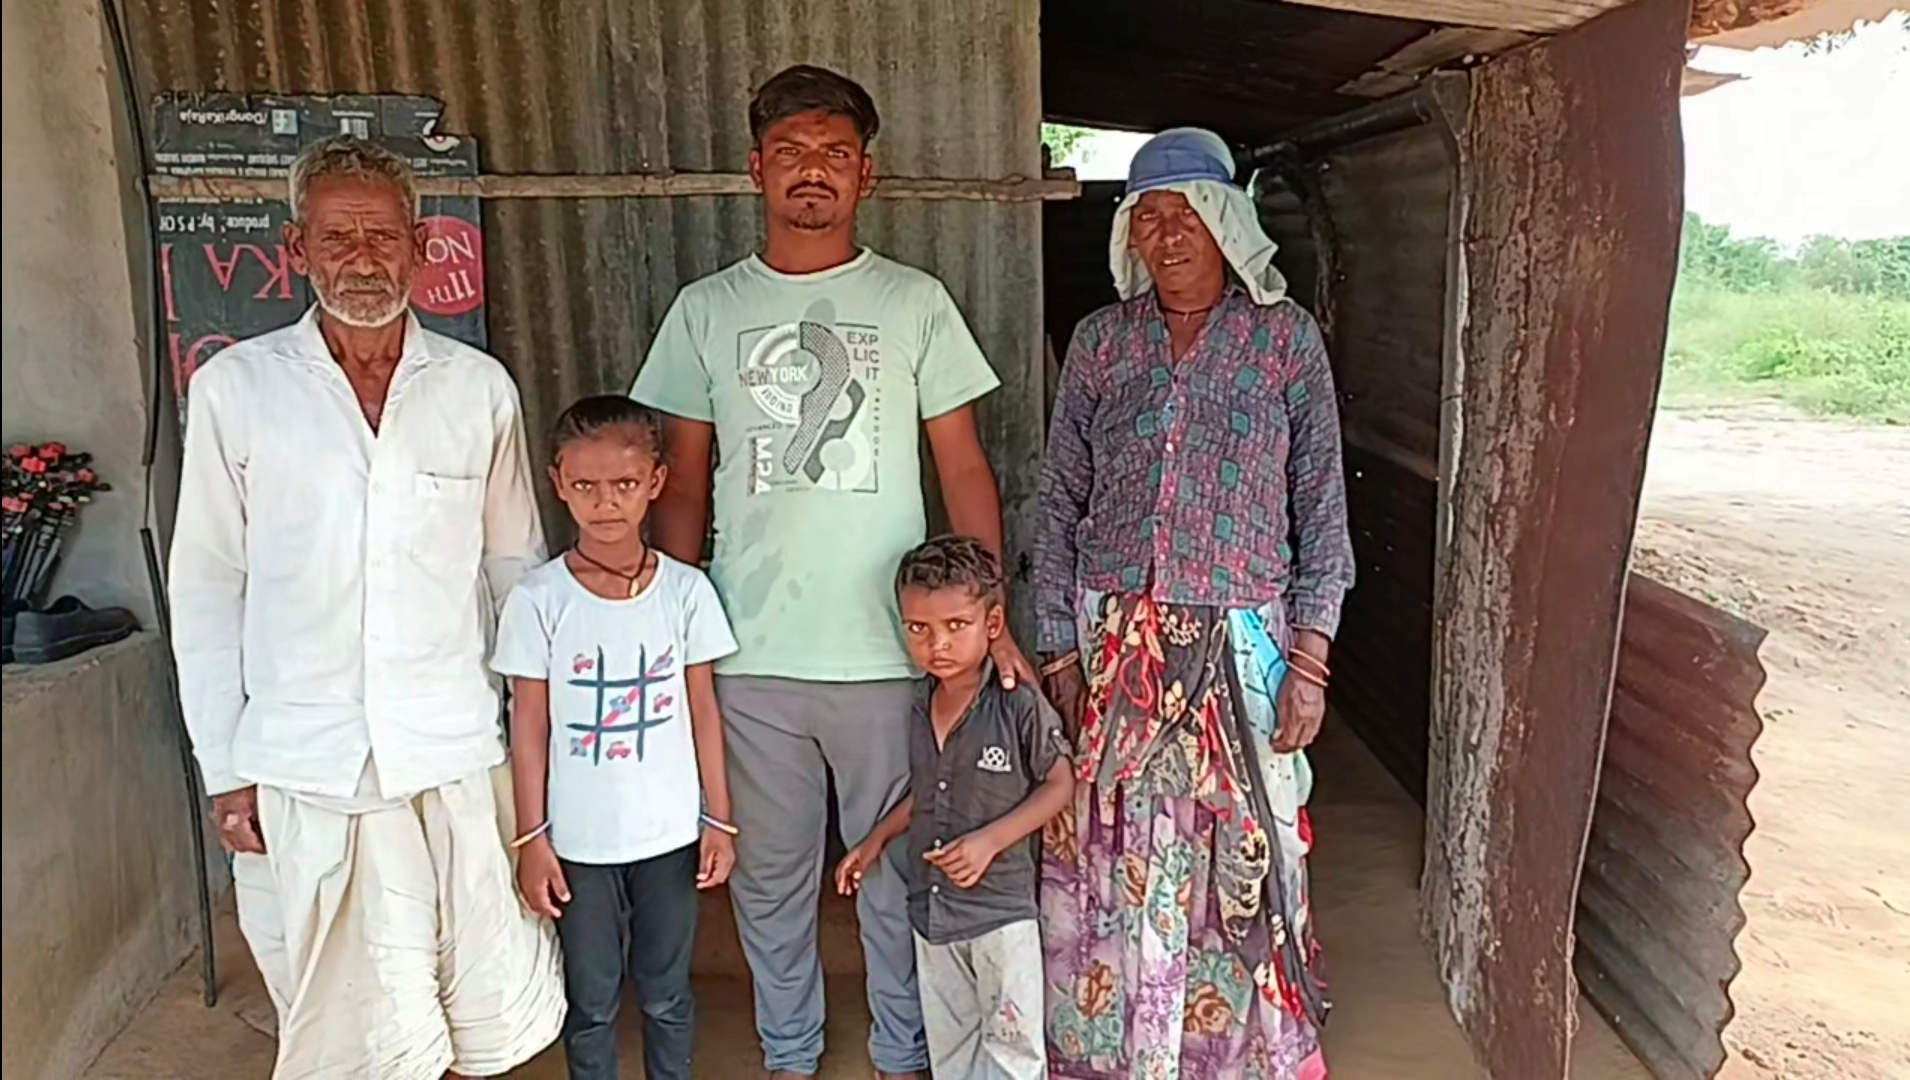 માલણ ગામેથી ચાર માસ અગાઉ ગુમ થયેલ બે સંતાનોની માતા હજુસુધી પરત ન ફરતા બાળકોનો કલ્પાંત